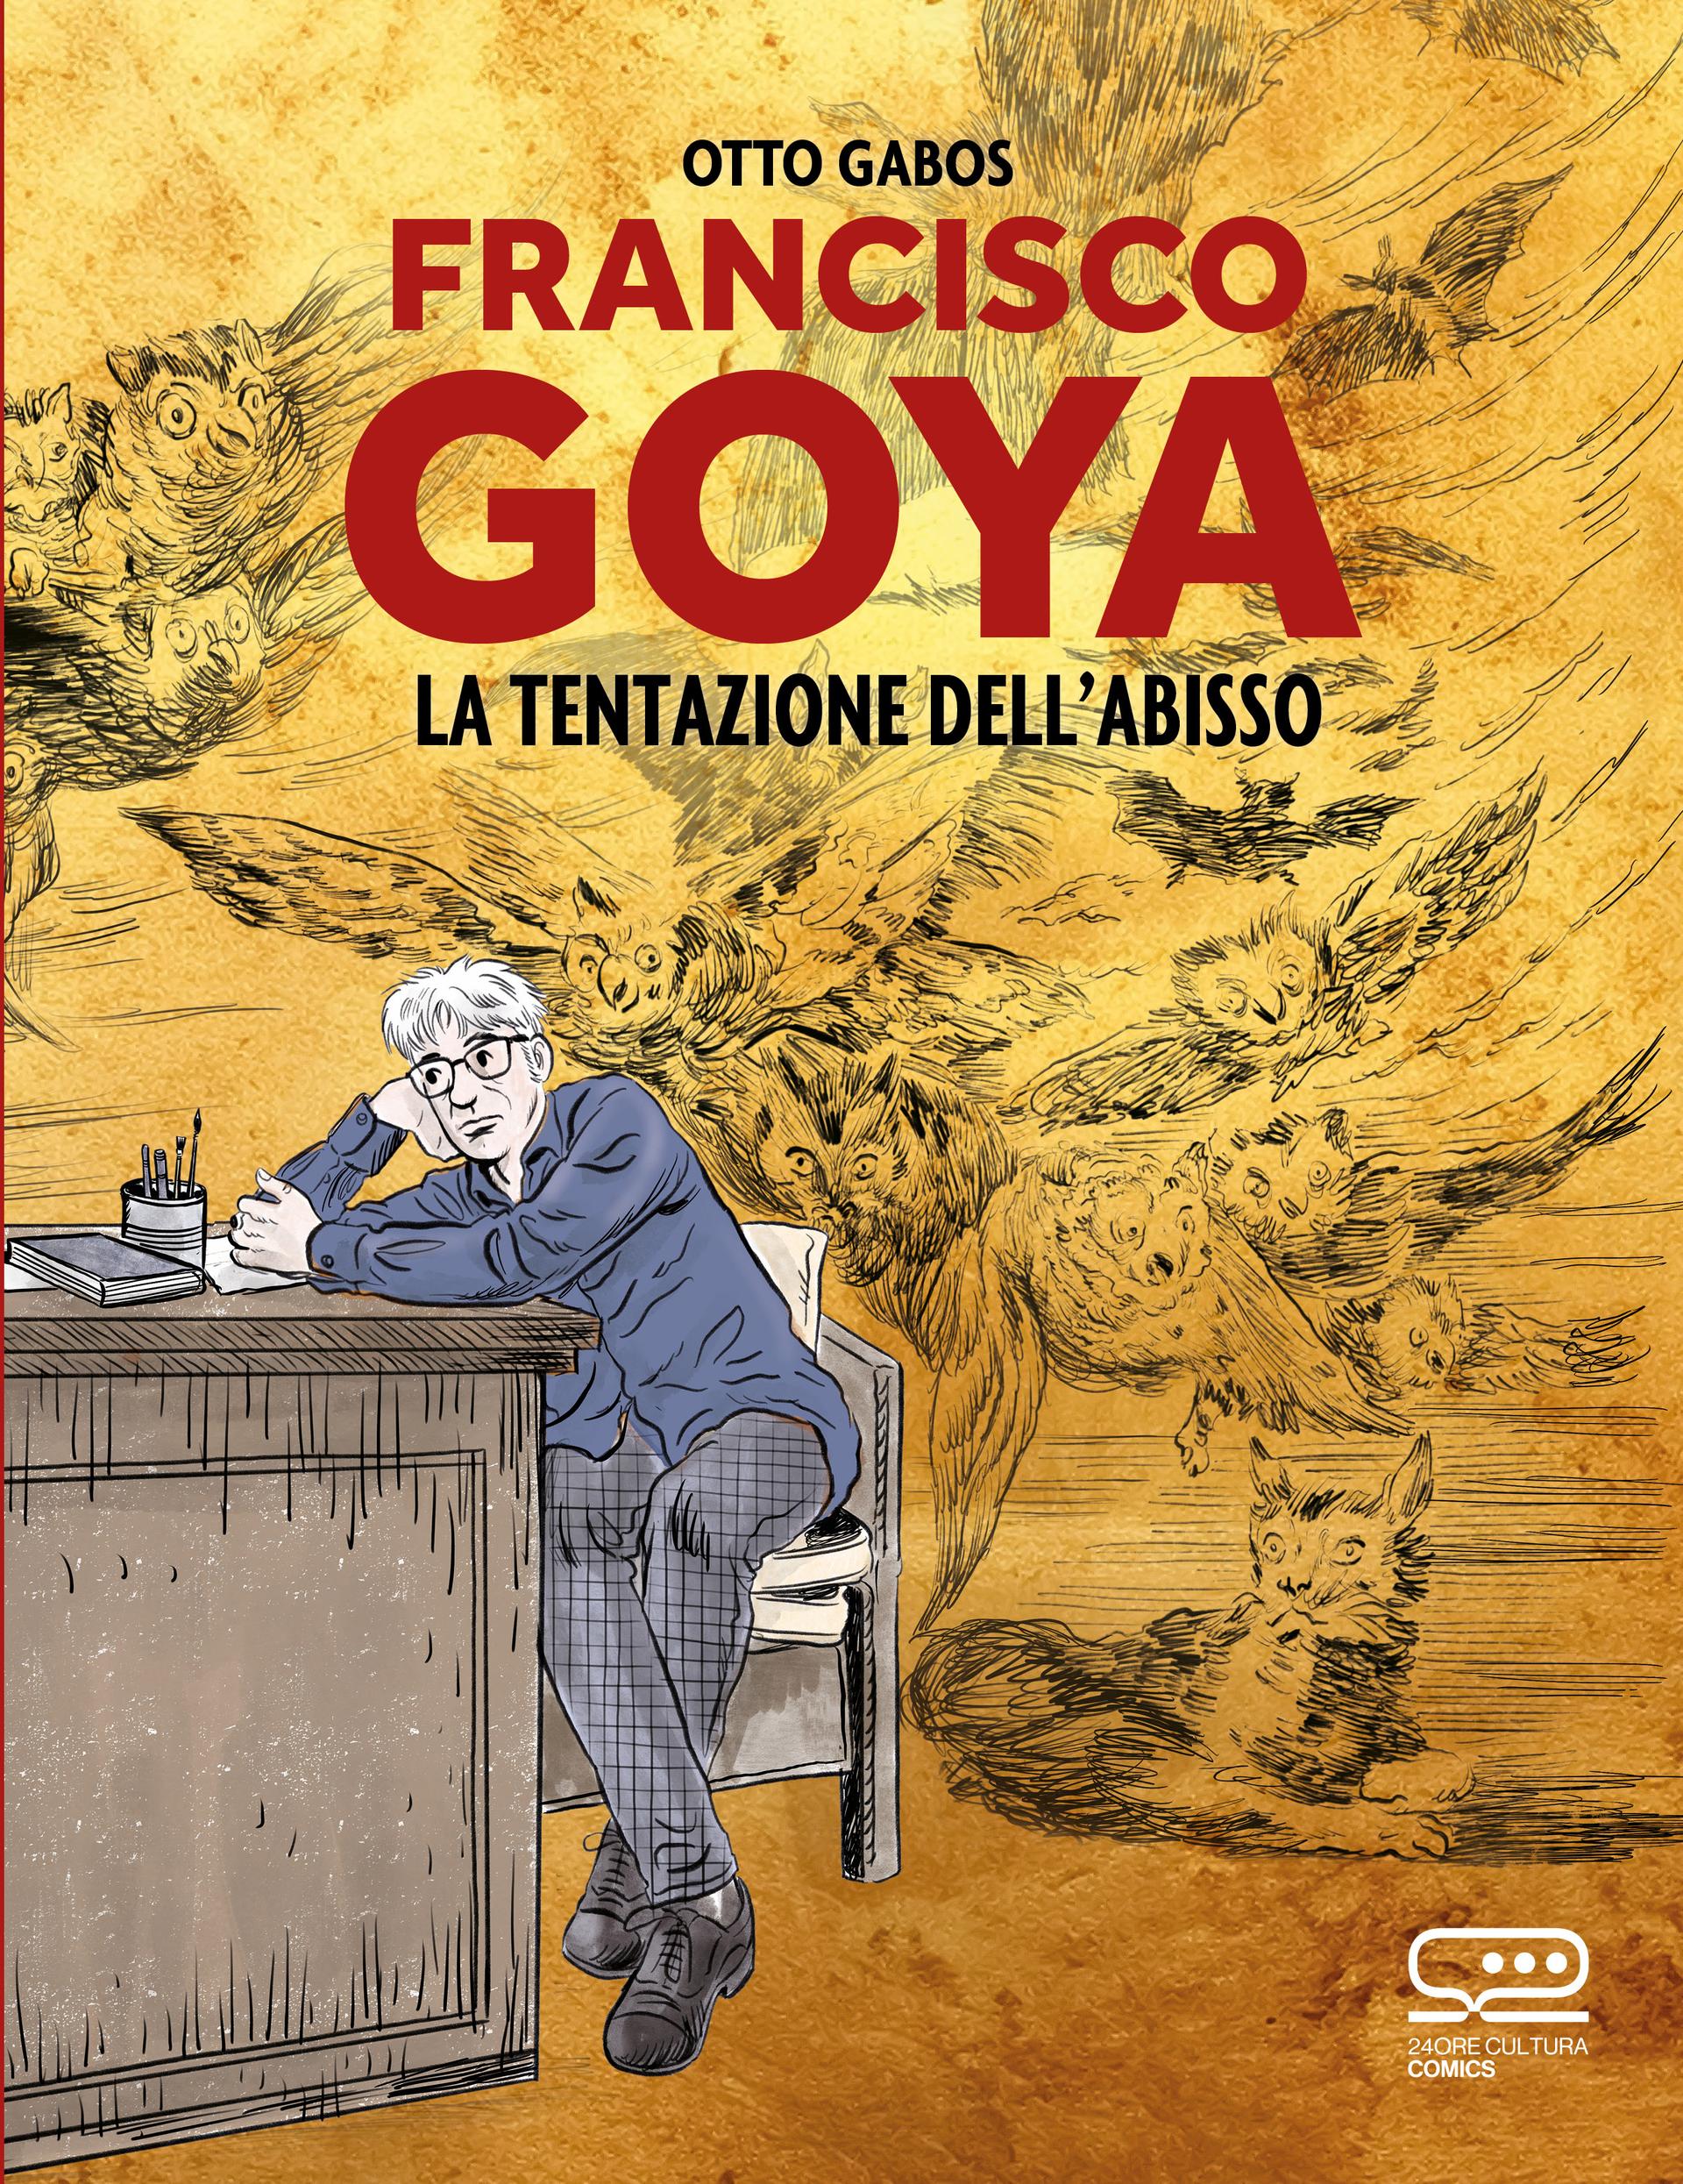 FRANCISCO GOYA.  La tentazione dell’abisso,  di Otto Gabos | edito da 24 ORE Cultura